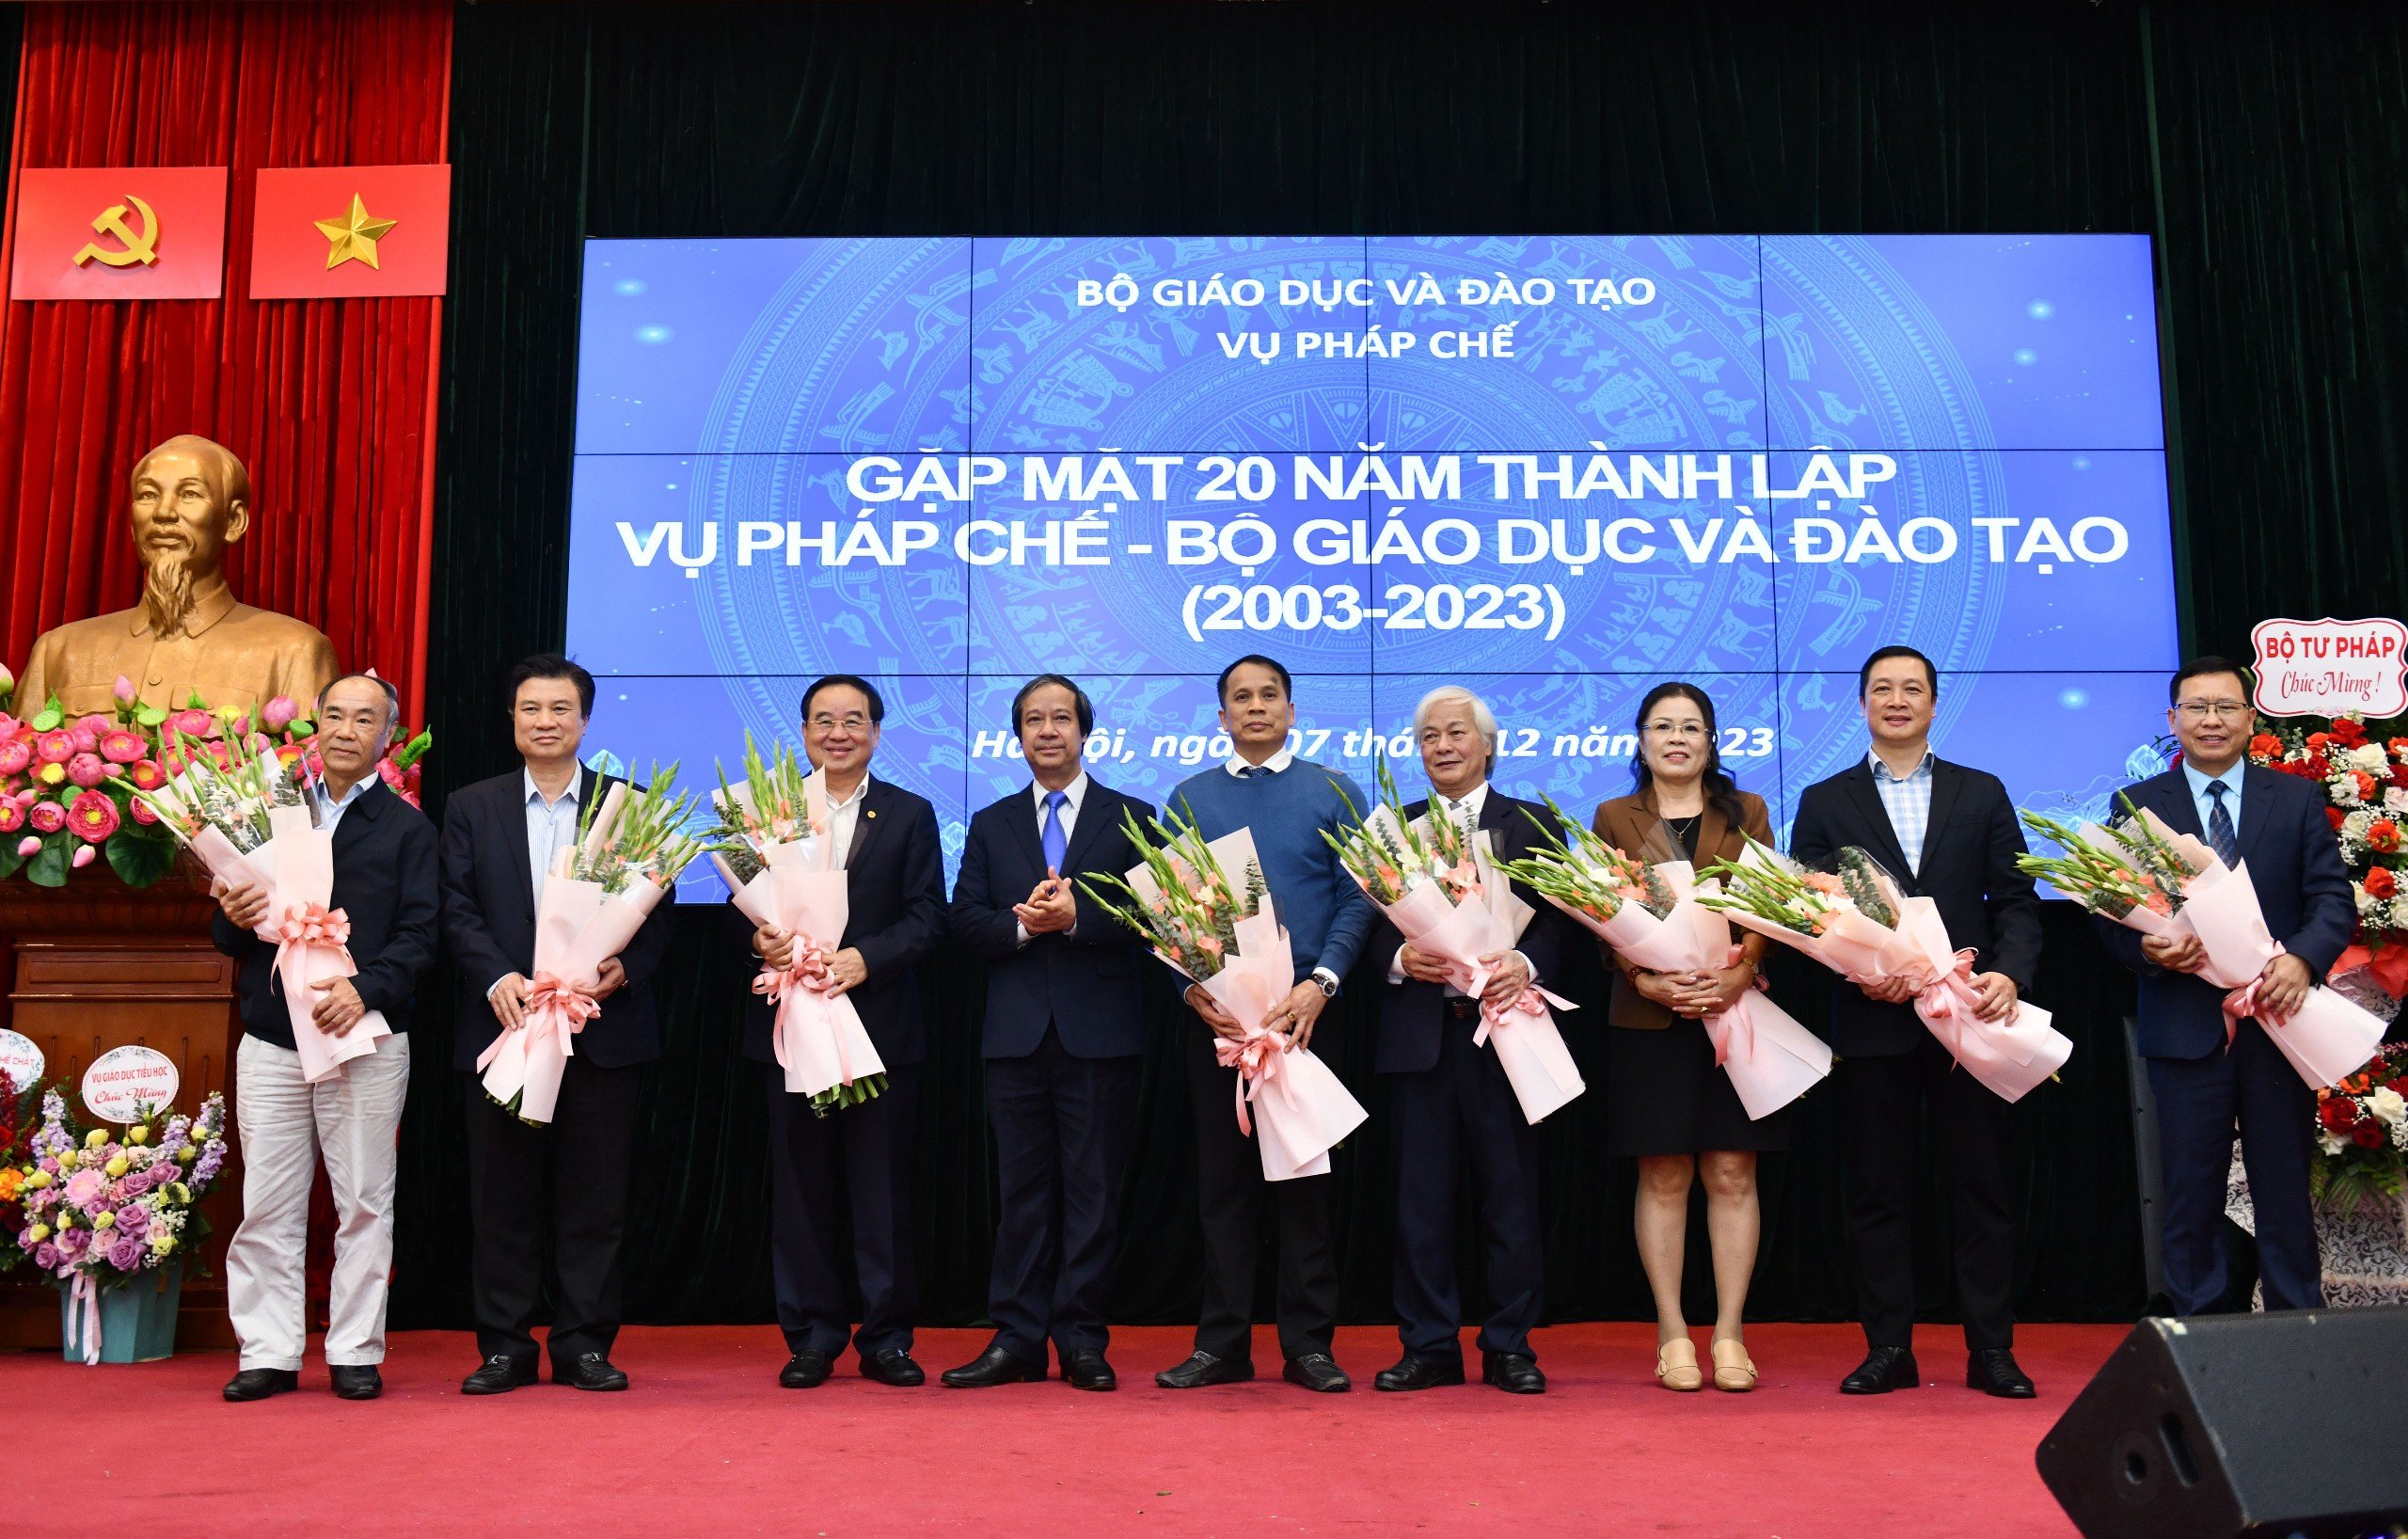 Bộ trưởng Nguyễn Kim Sơn tặng hoa tri ân nguyên lãnh đạo Bộ phụ trách Vụ Pháp chế và lãnh đạo Vụ Pháp chế các thời kỳ.